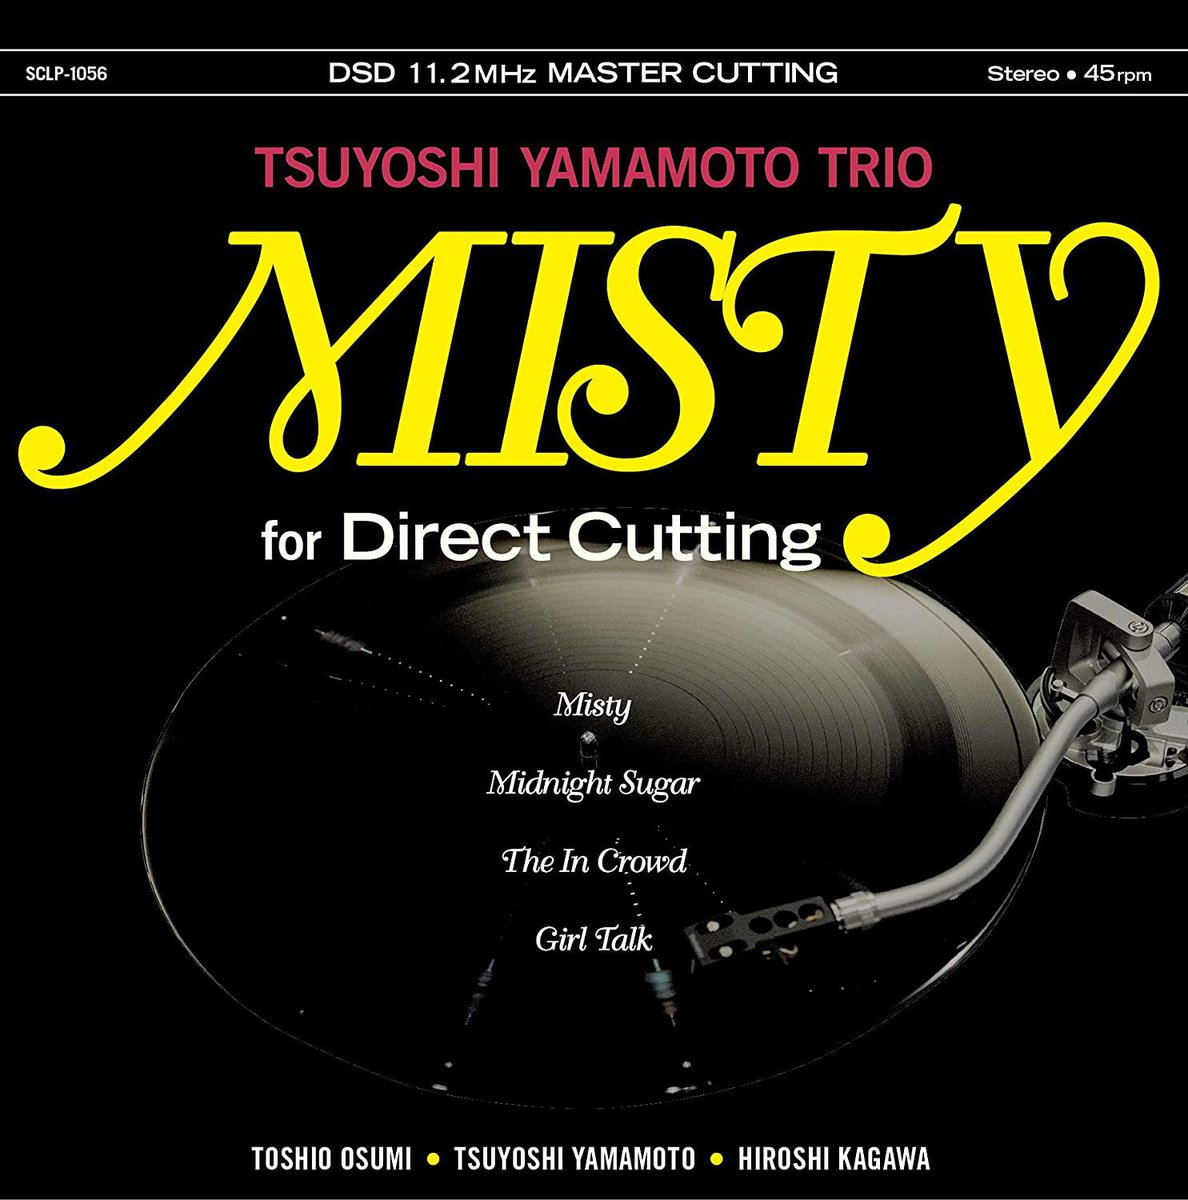 ジャズ史上屈指の名盤『MISTY for Direct Cutting』レコードがDSD版となって再登場 - PHILE WEB